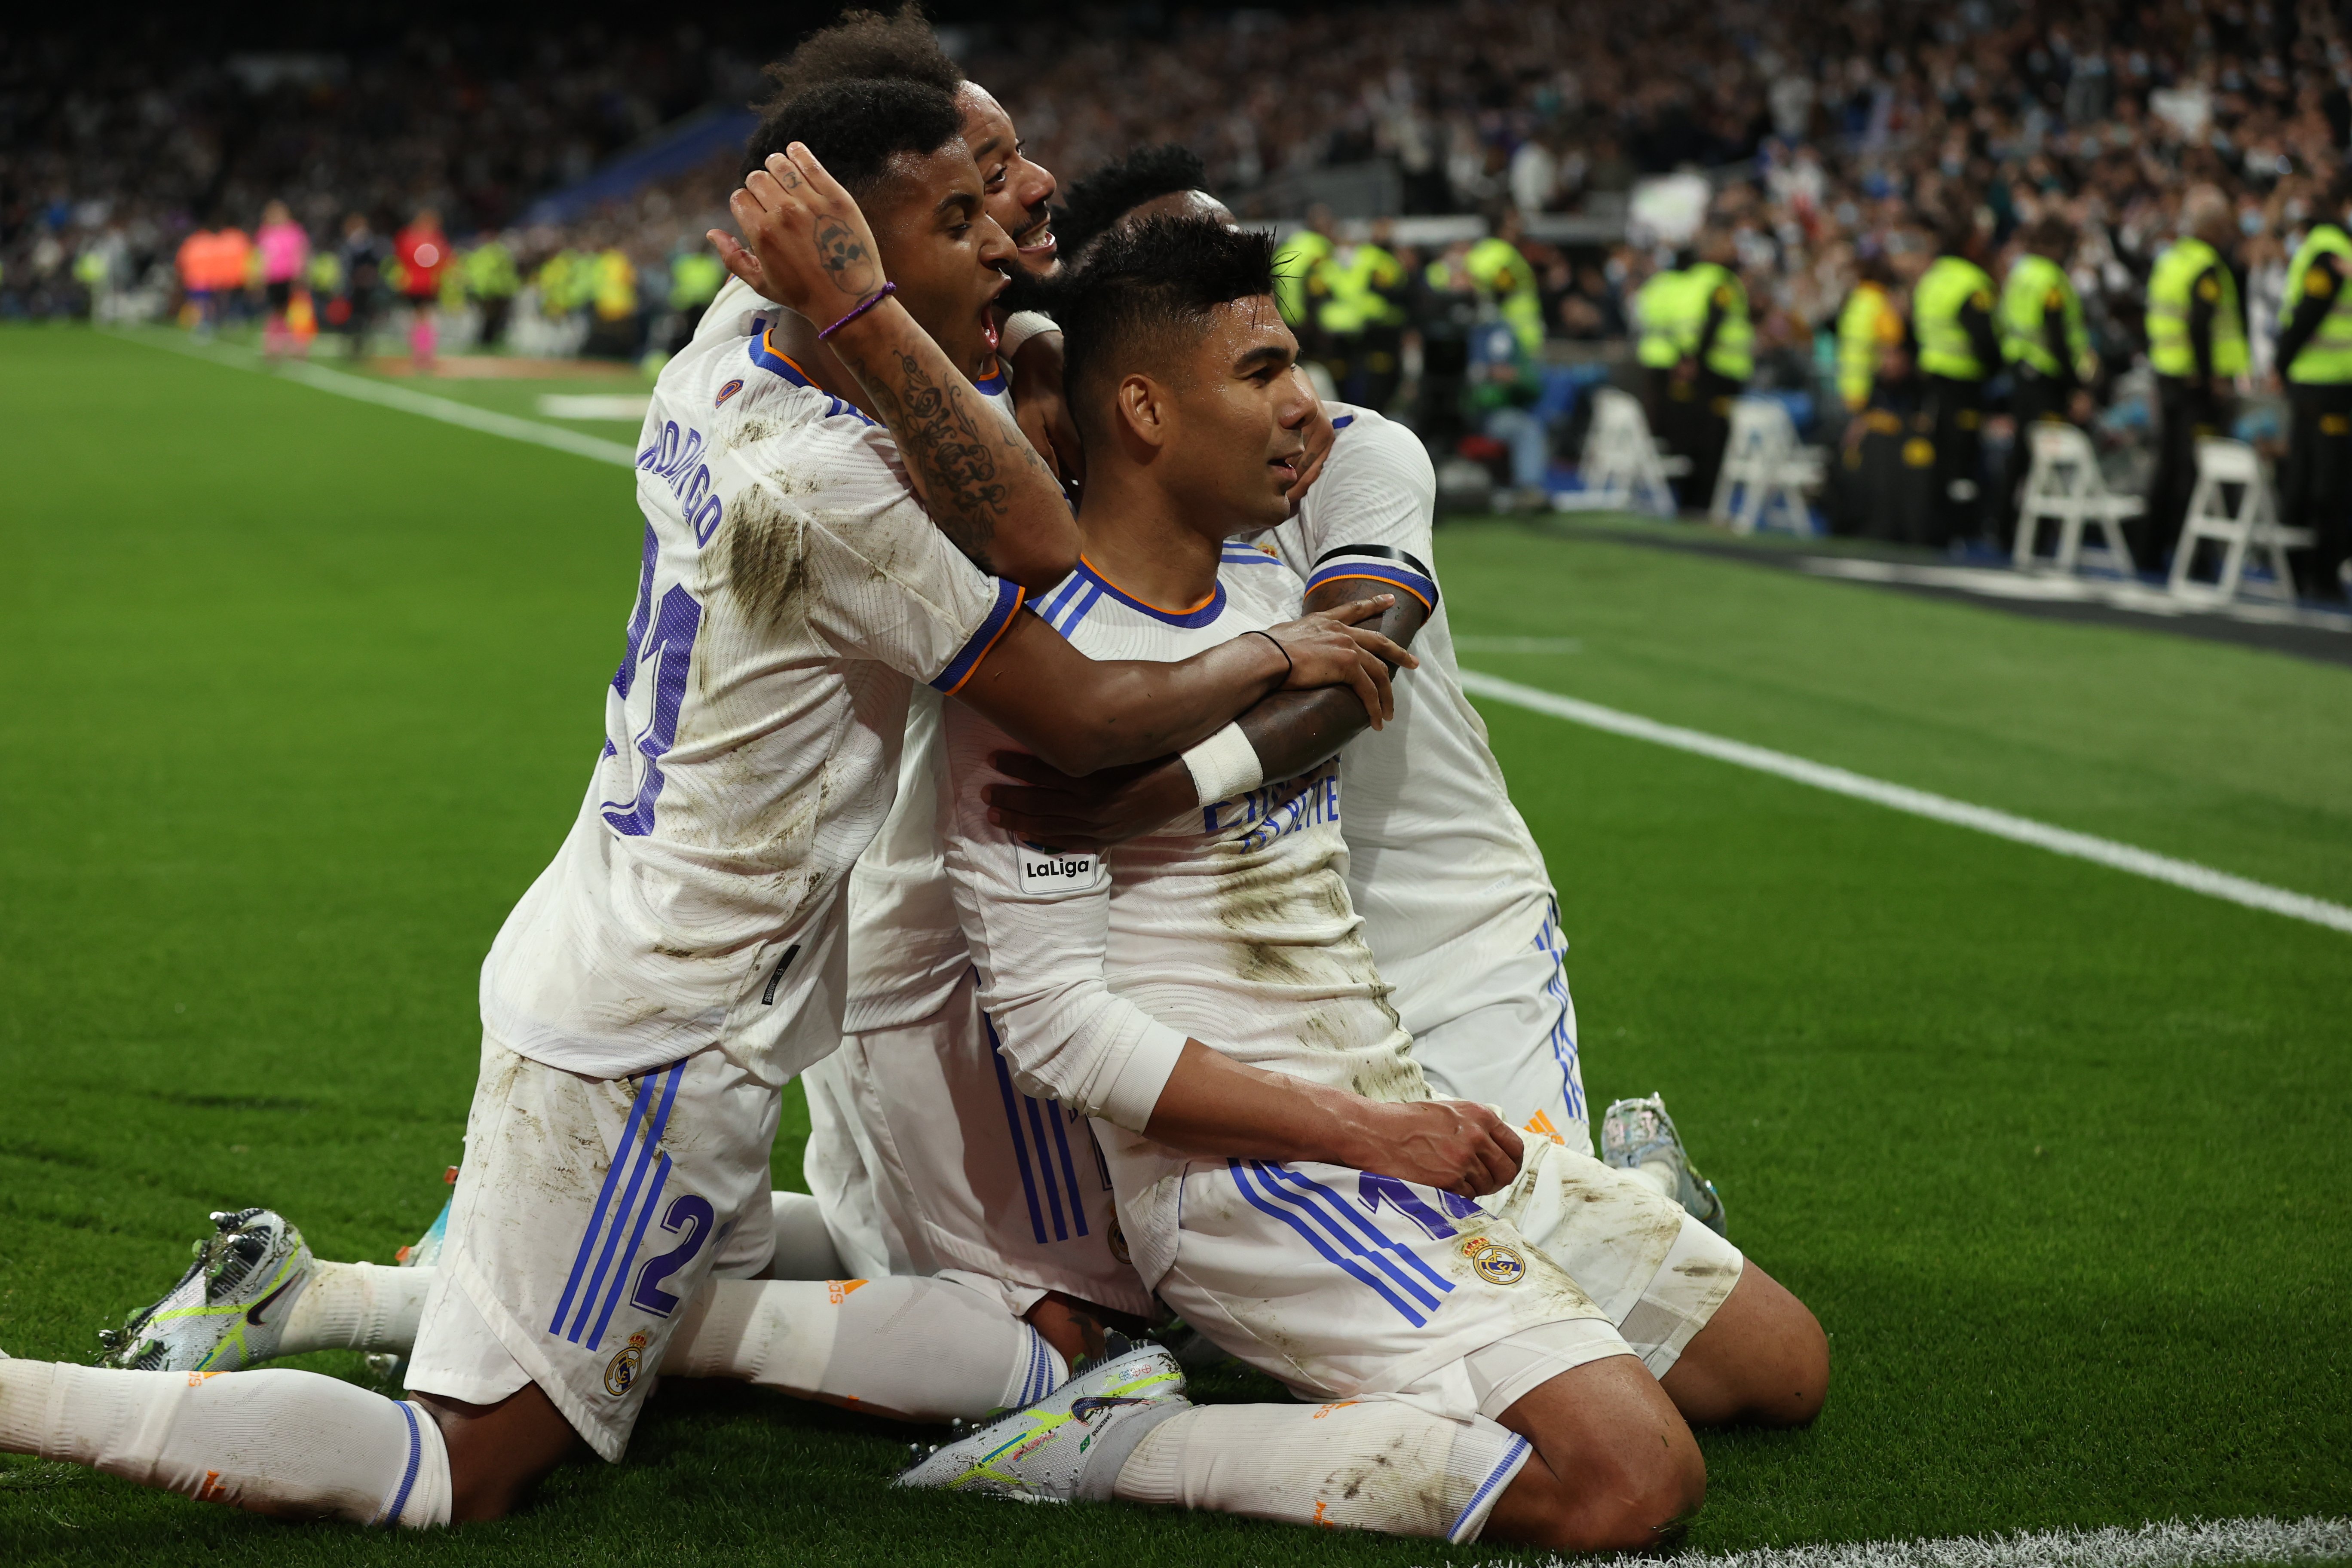 El Real Madrid se impone sin problemas a un inofensivo Getafe (2-0) y llega tranquilo al duelo del Chelsea